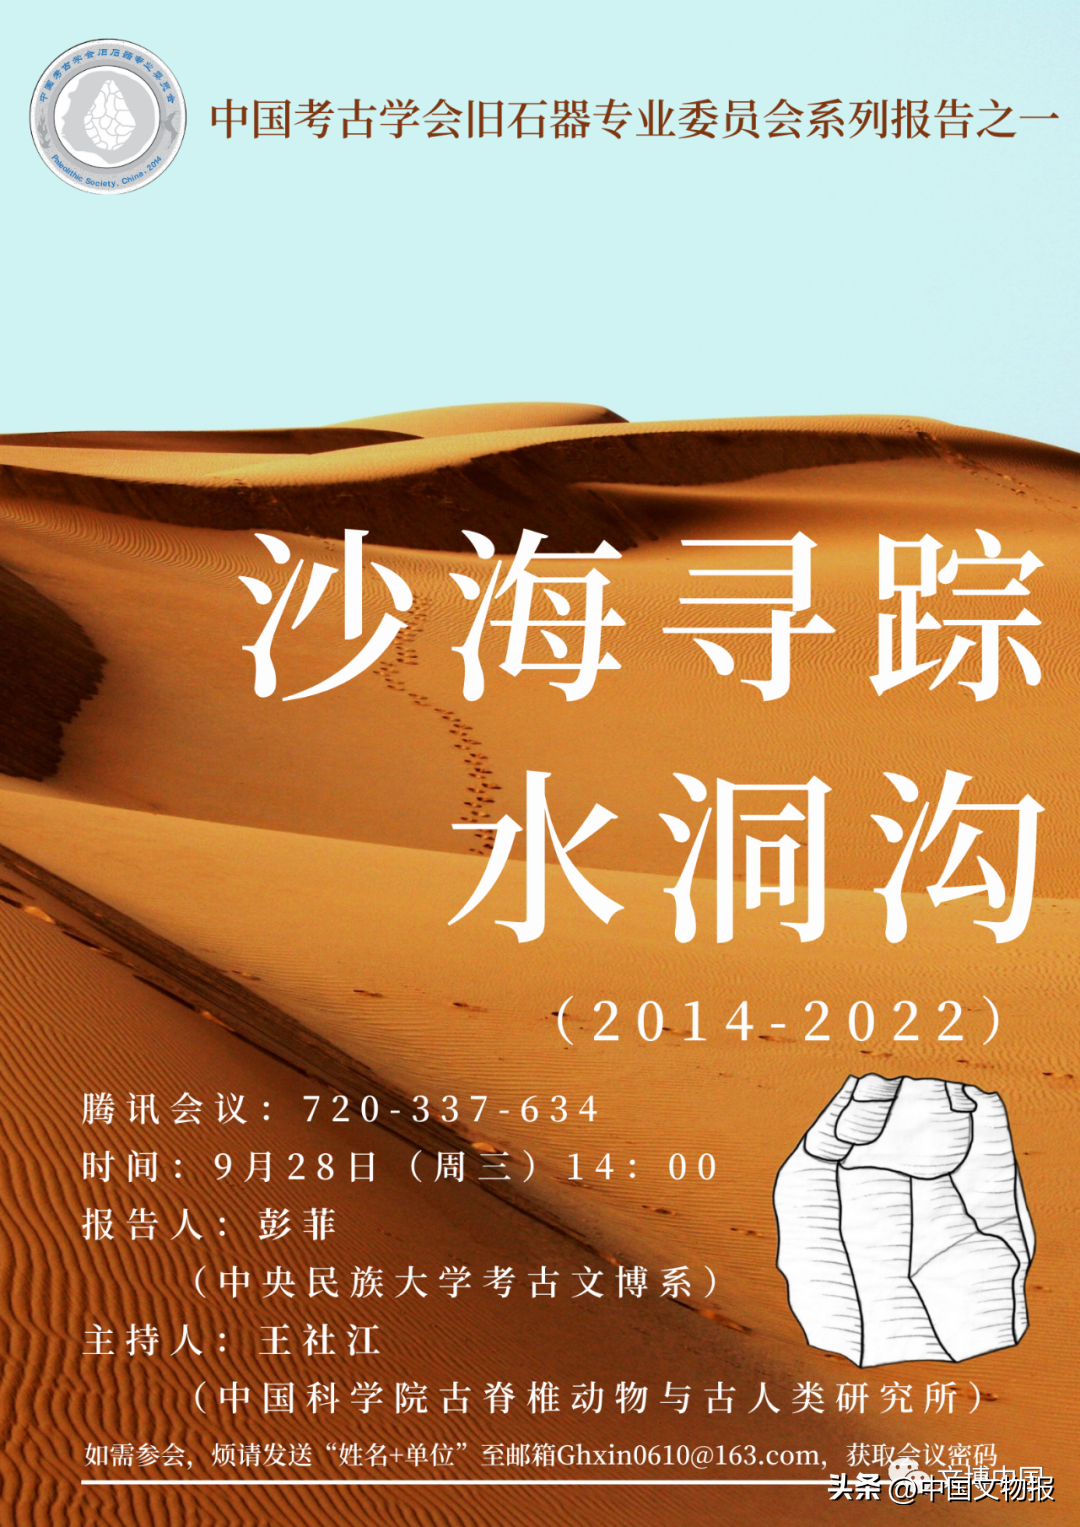 中国考古学会旧石器专委会2022年系列学术报告侧记